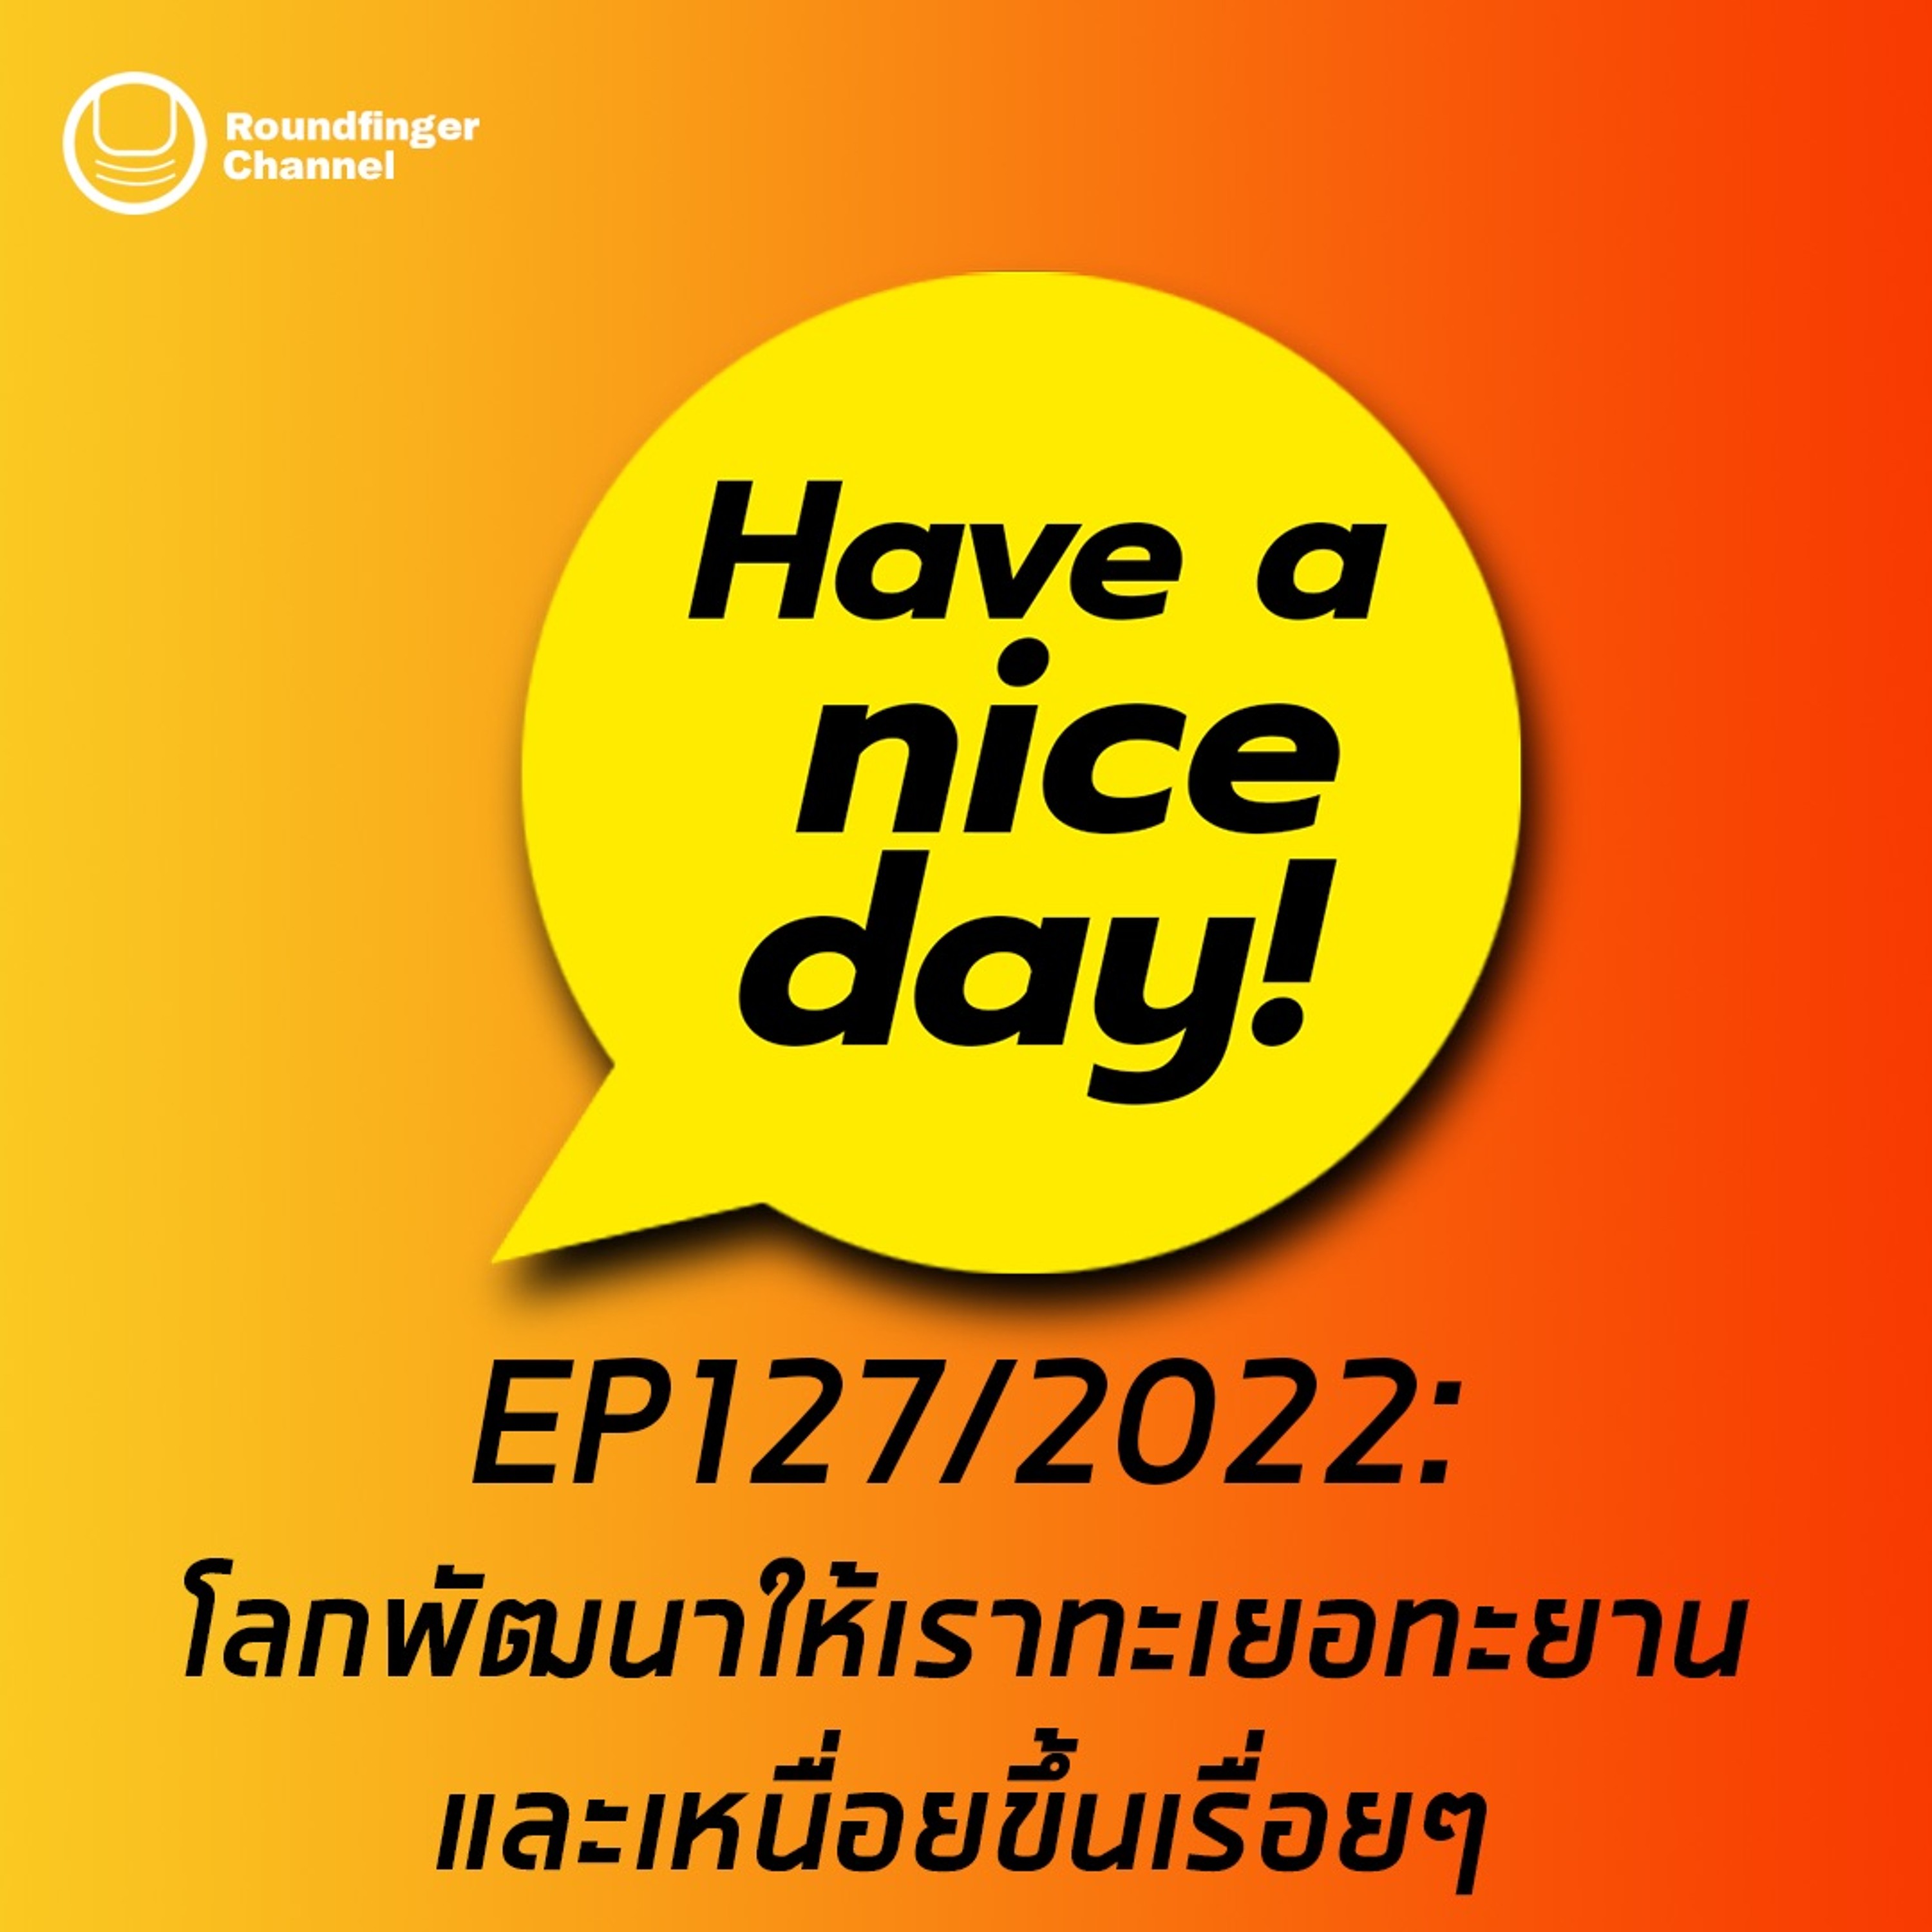 โลกพัฒนาให้เราทะเยอทะยานและเหนื่อยขึ้นเรื่อยๆ | Have A Nice Day! EP127 2022